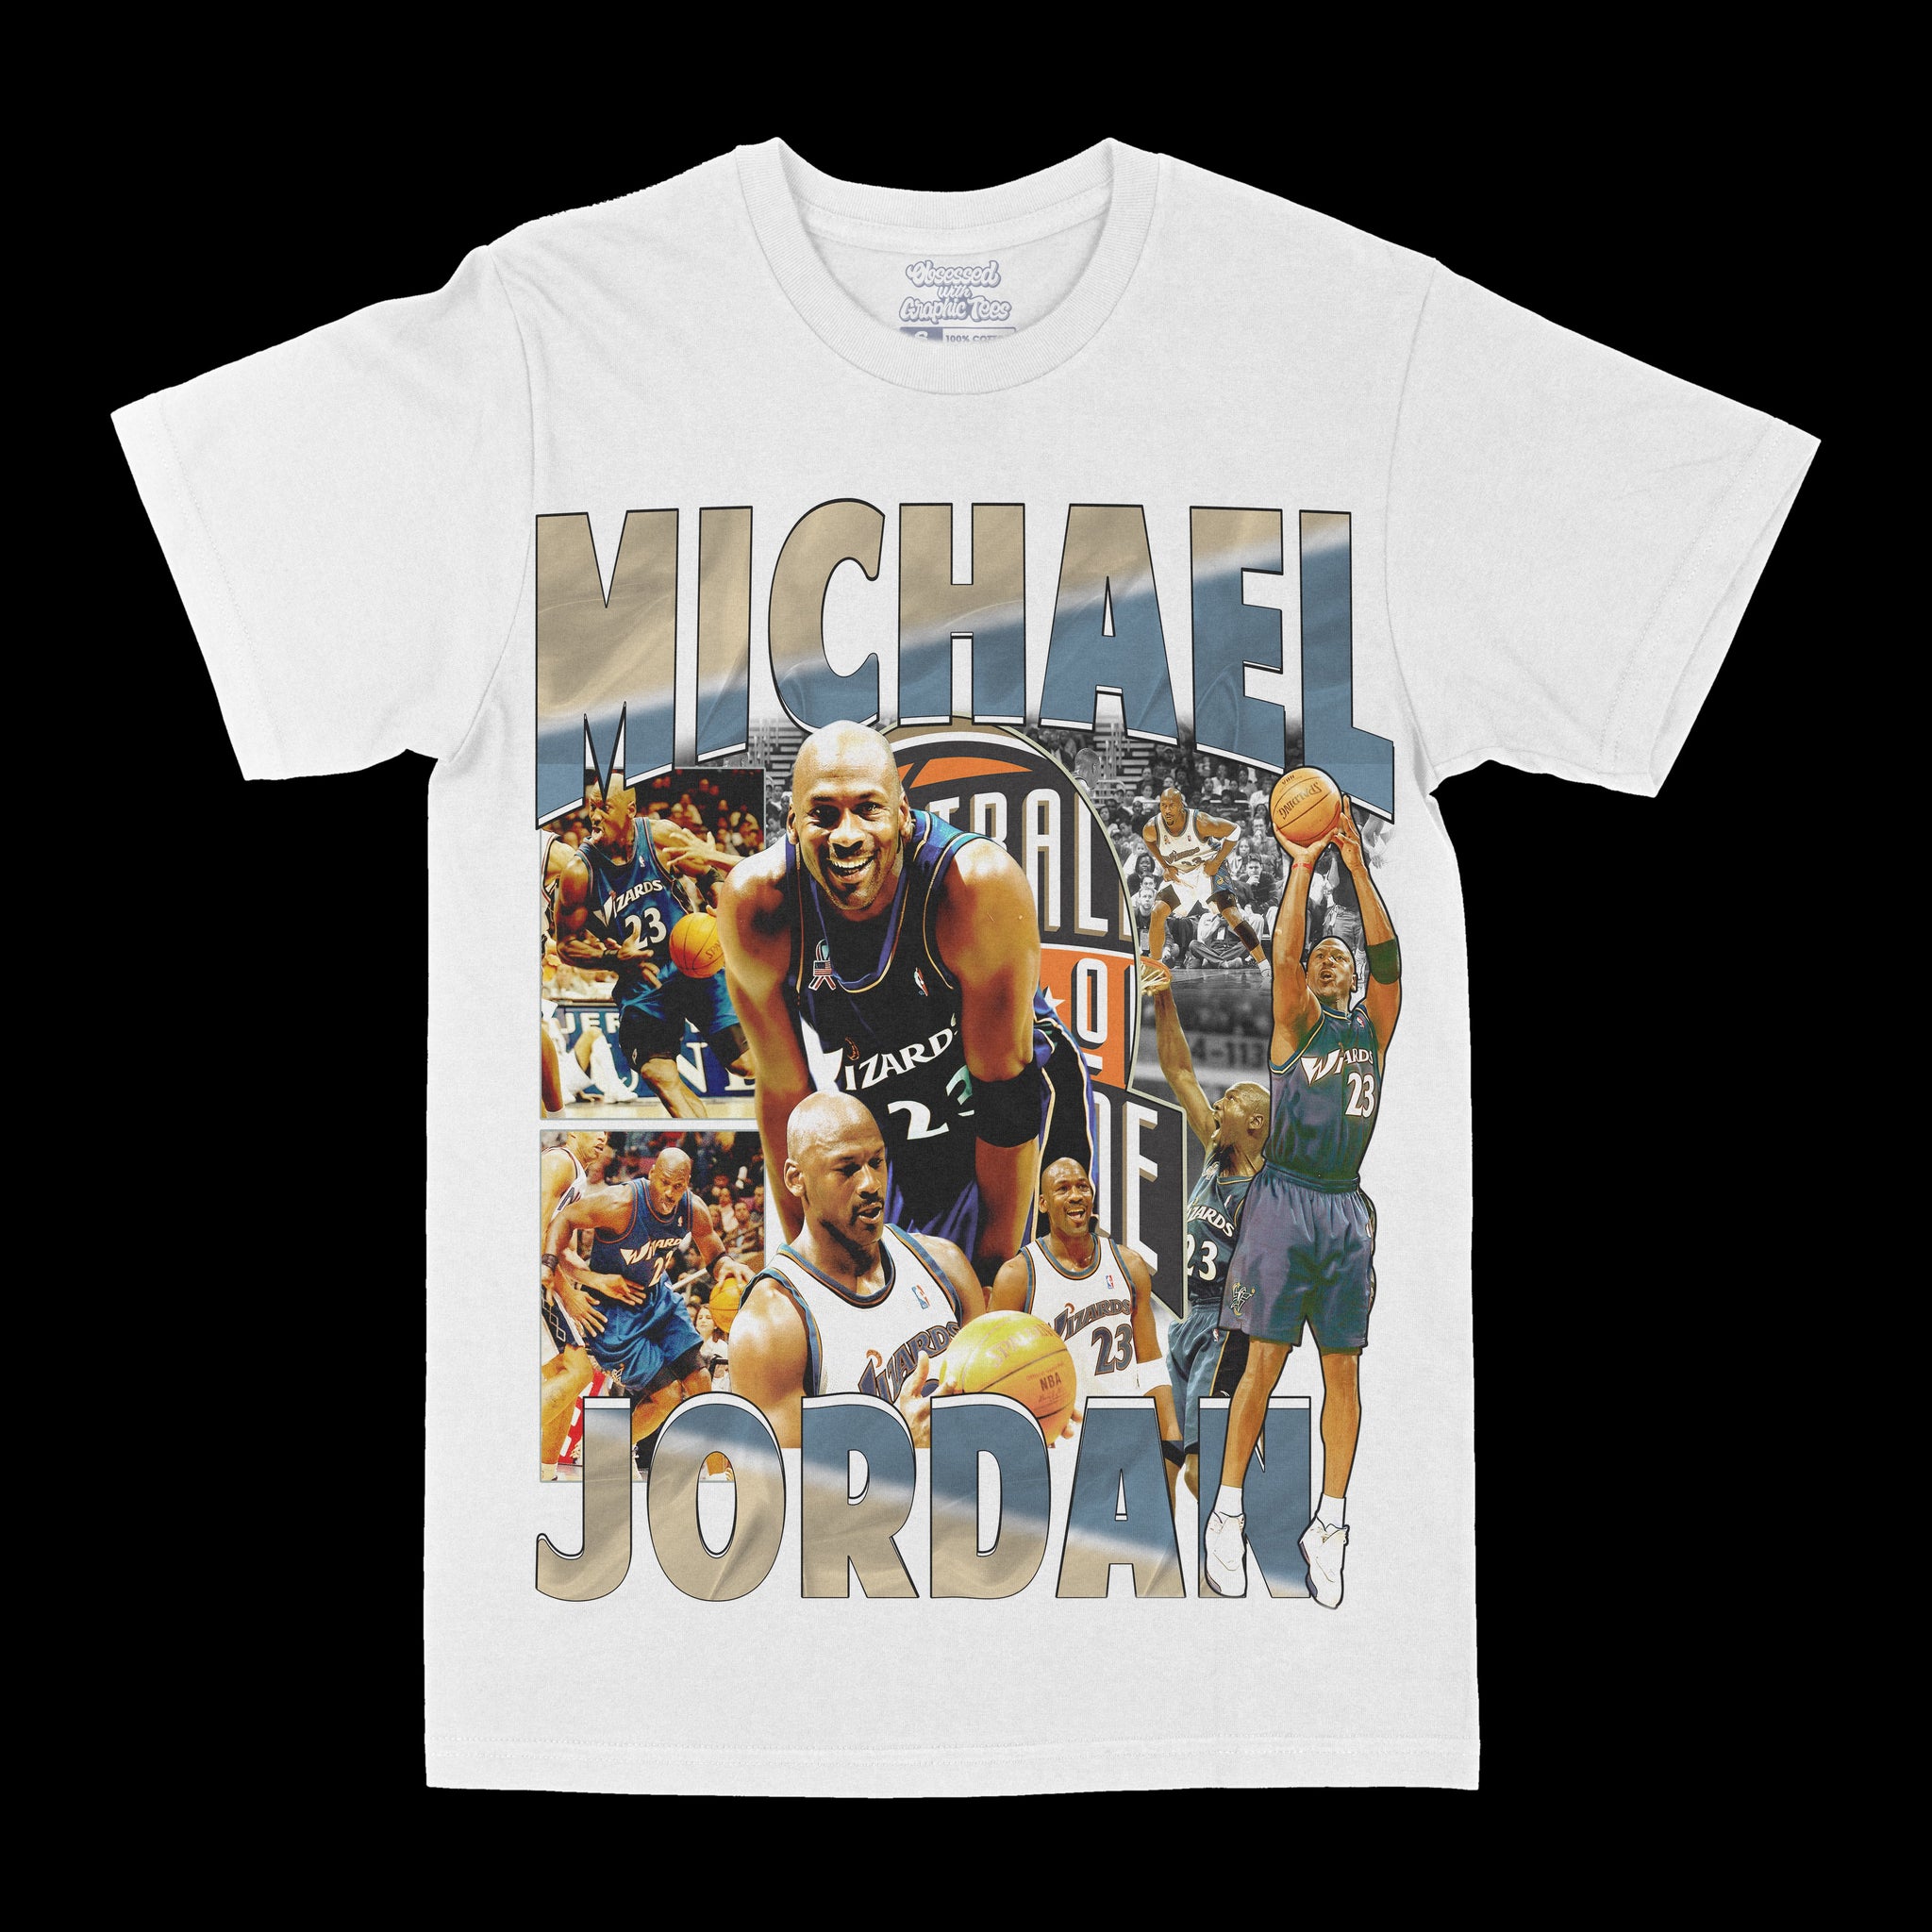 Michael Jordan "Wizards" Graphic Tee